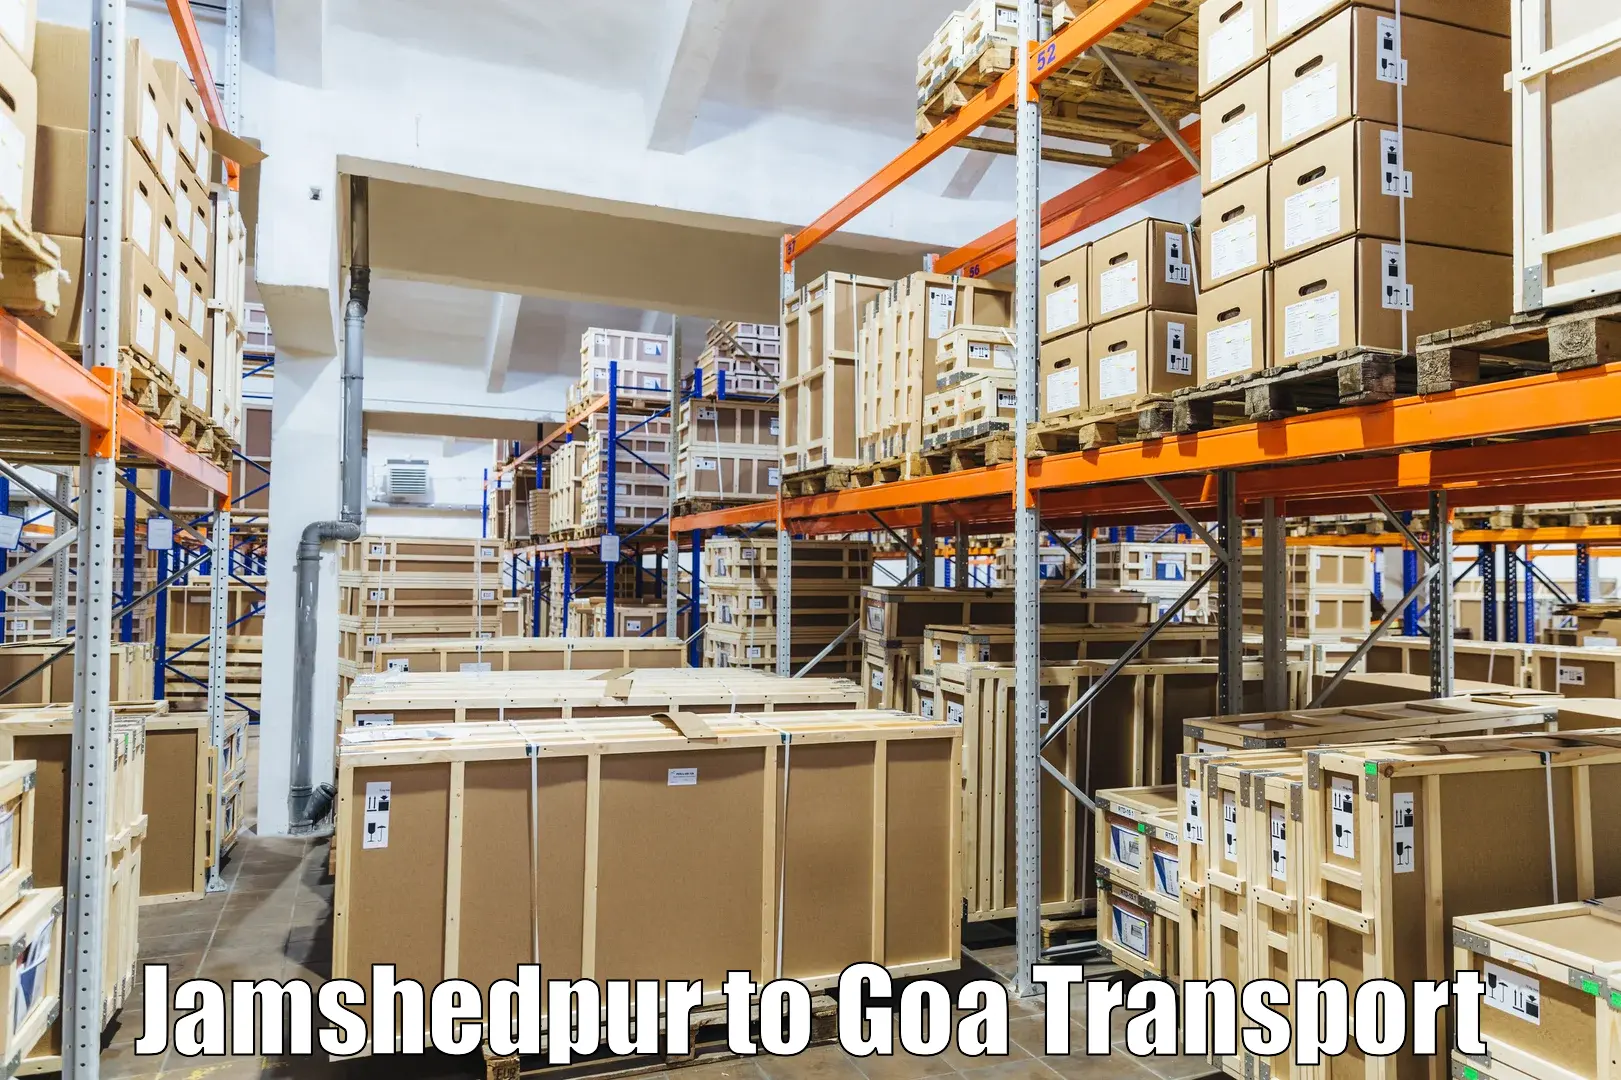 Daily parcel service transport Jamshedpur to Ponda